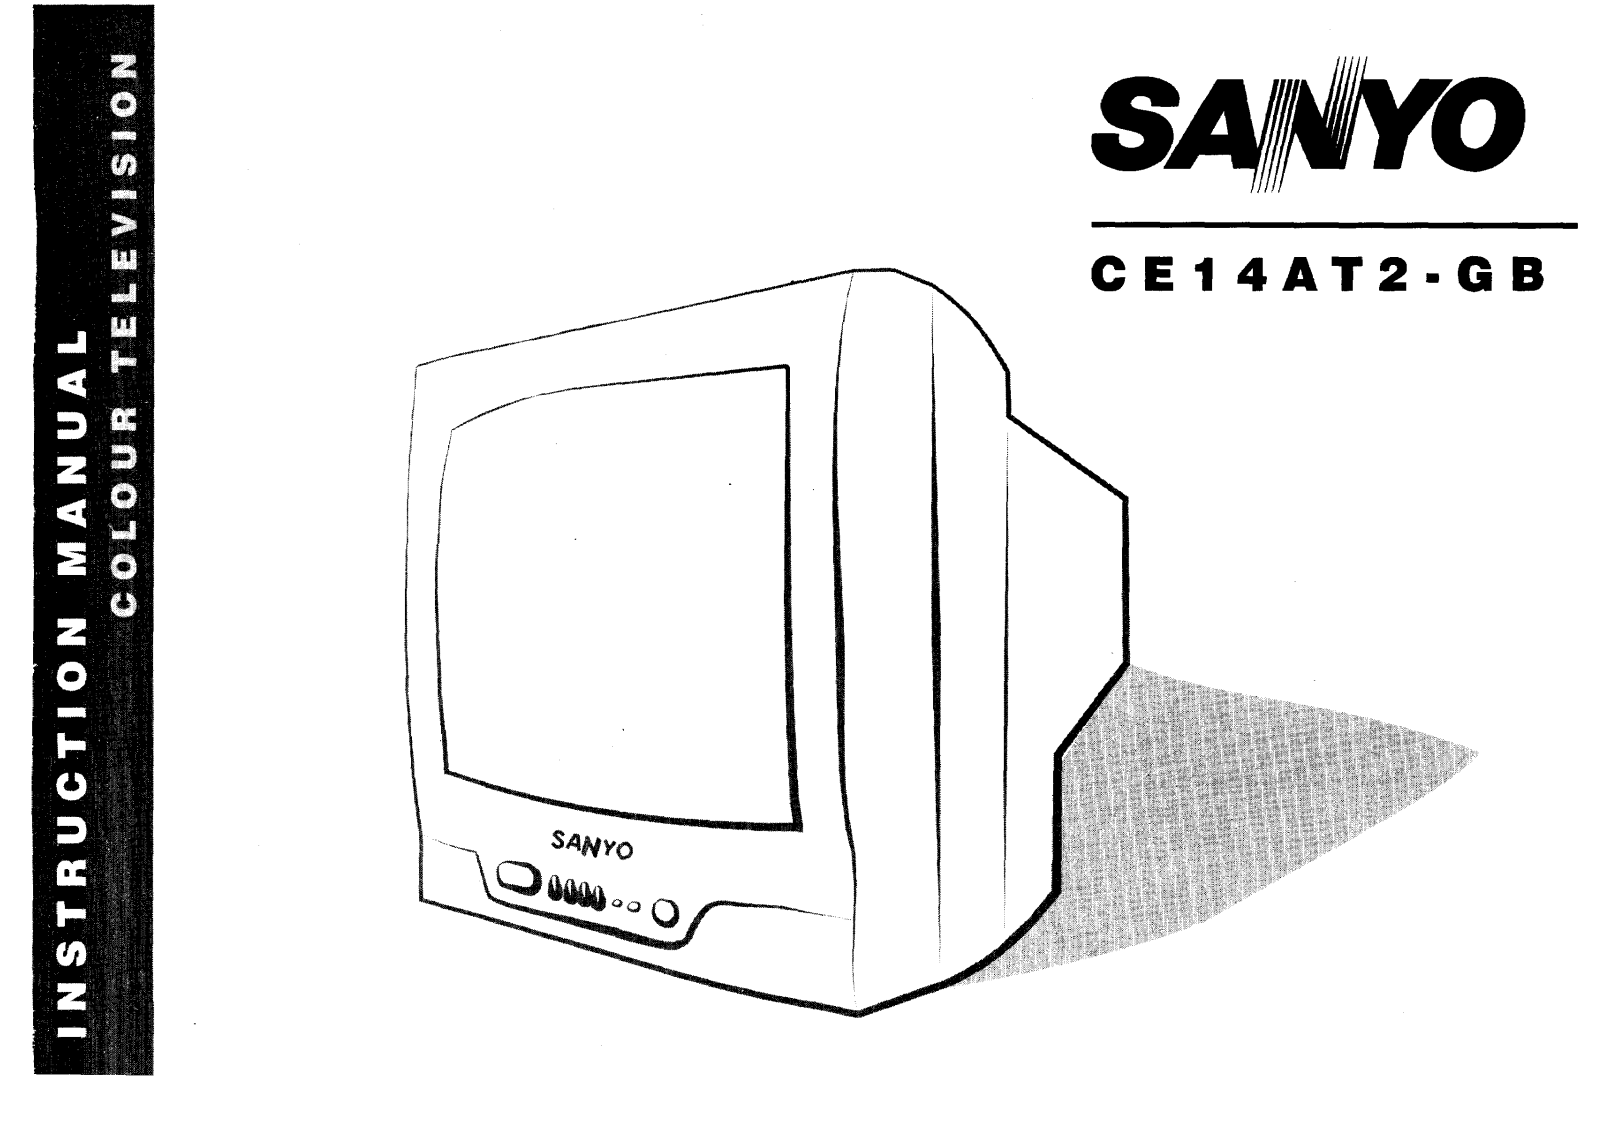 Sanyo CE14AT2-GB Instruction Manual